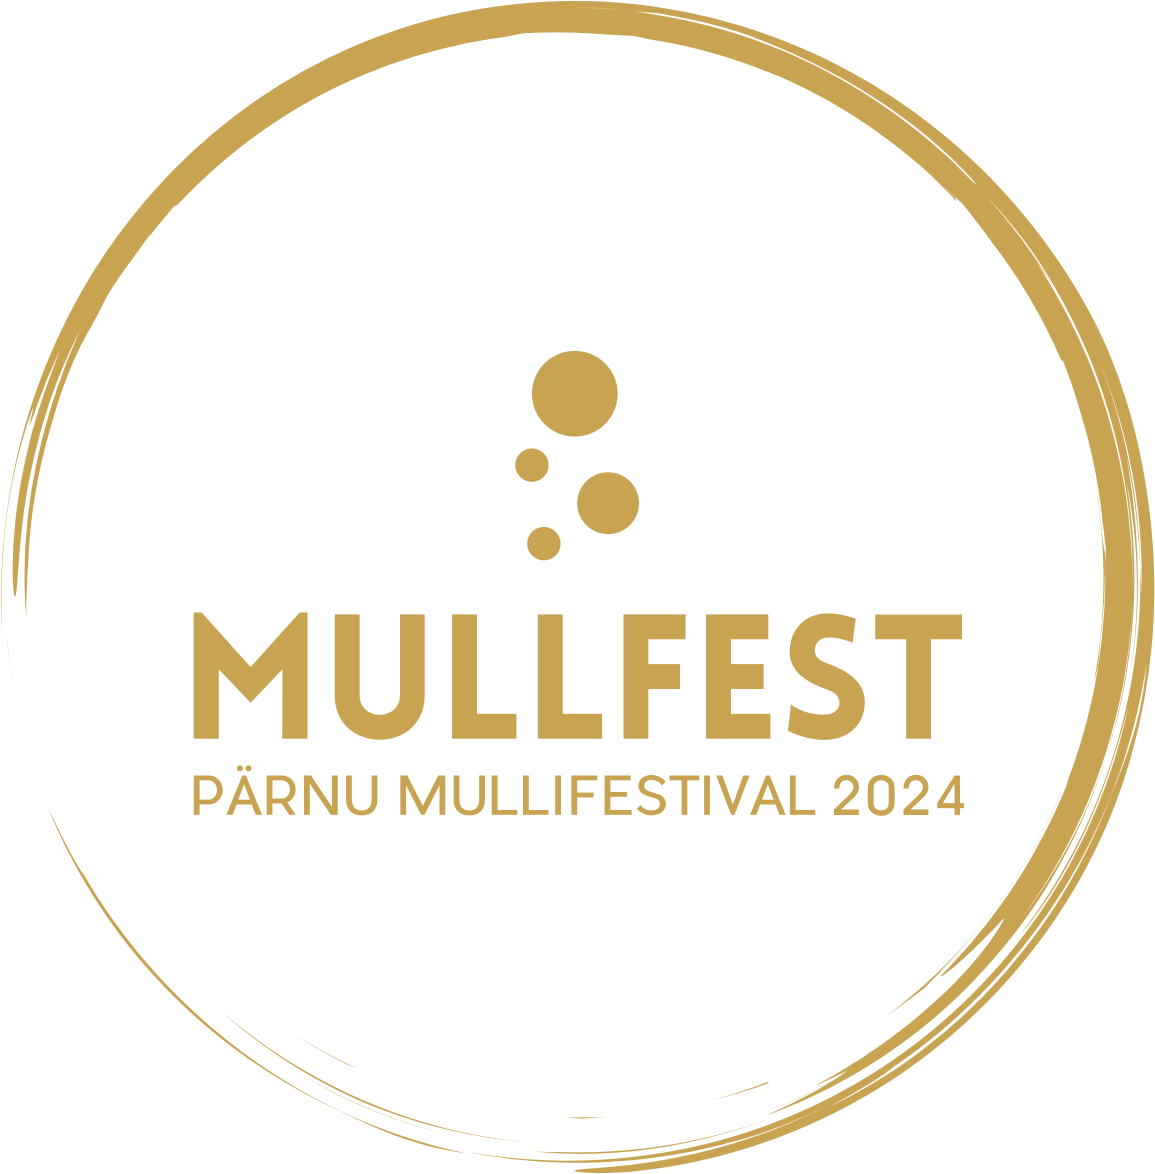 Mullfest 2024 logo